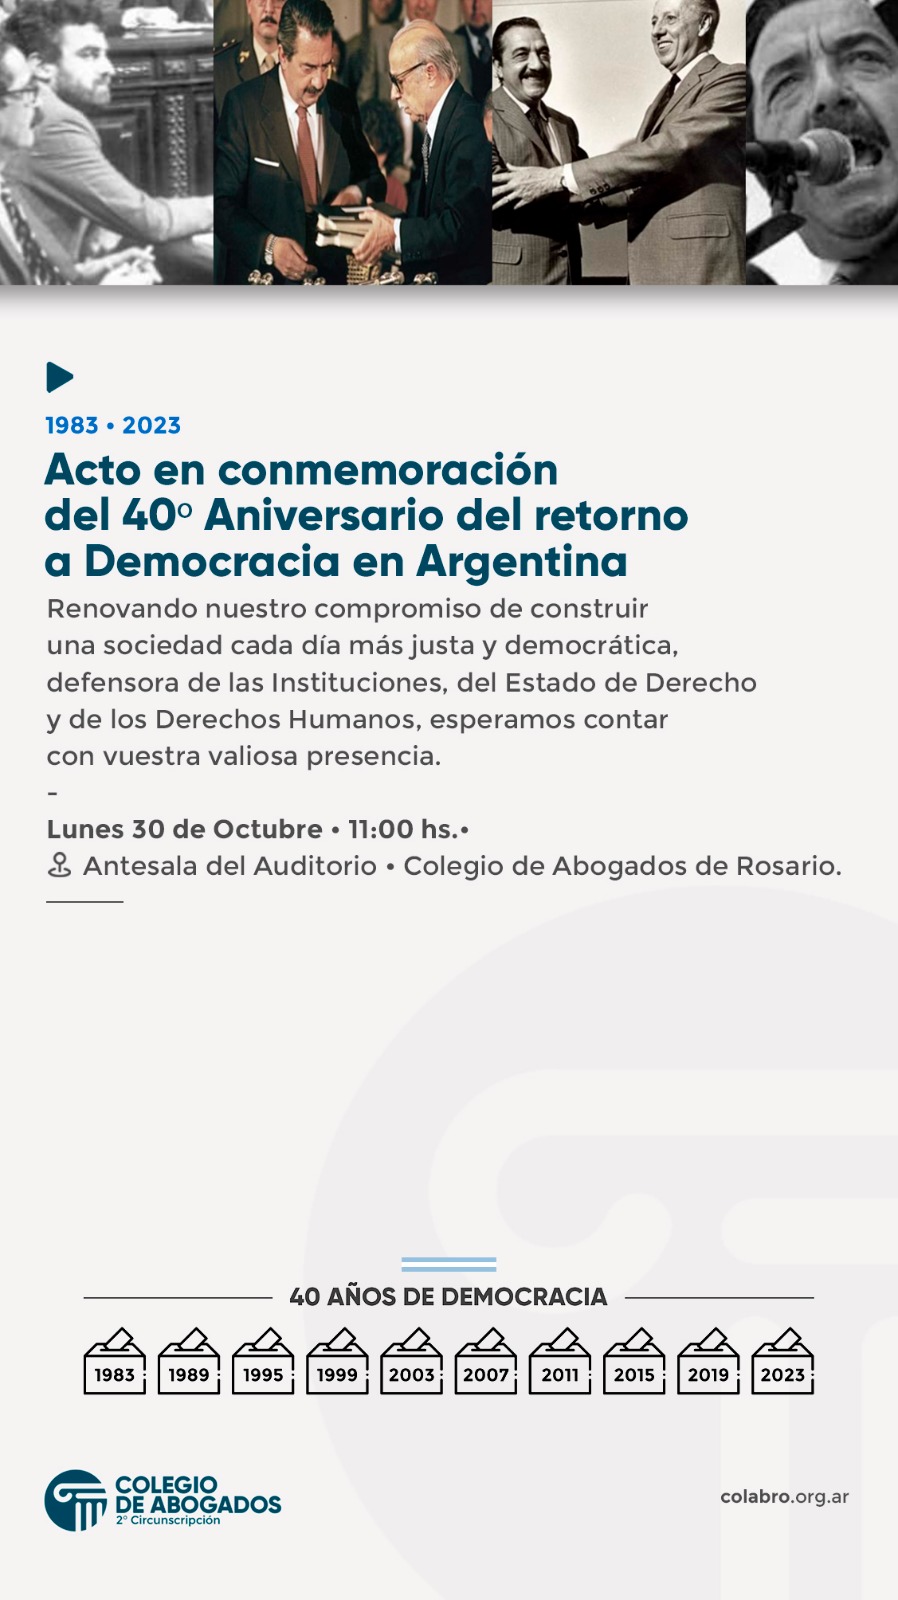 Acto en conmemoración del 40º Aniversario del retorno a Democracia en Argentina